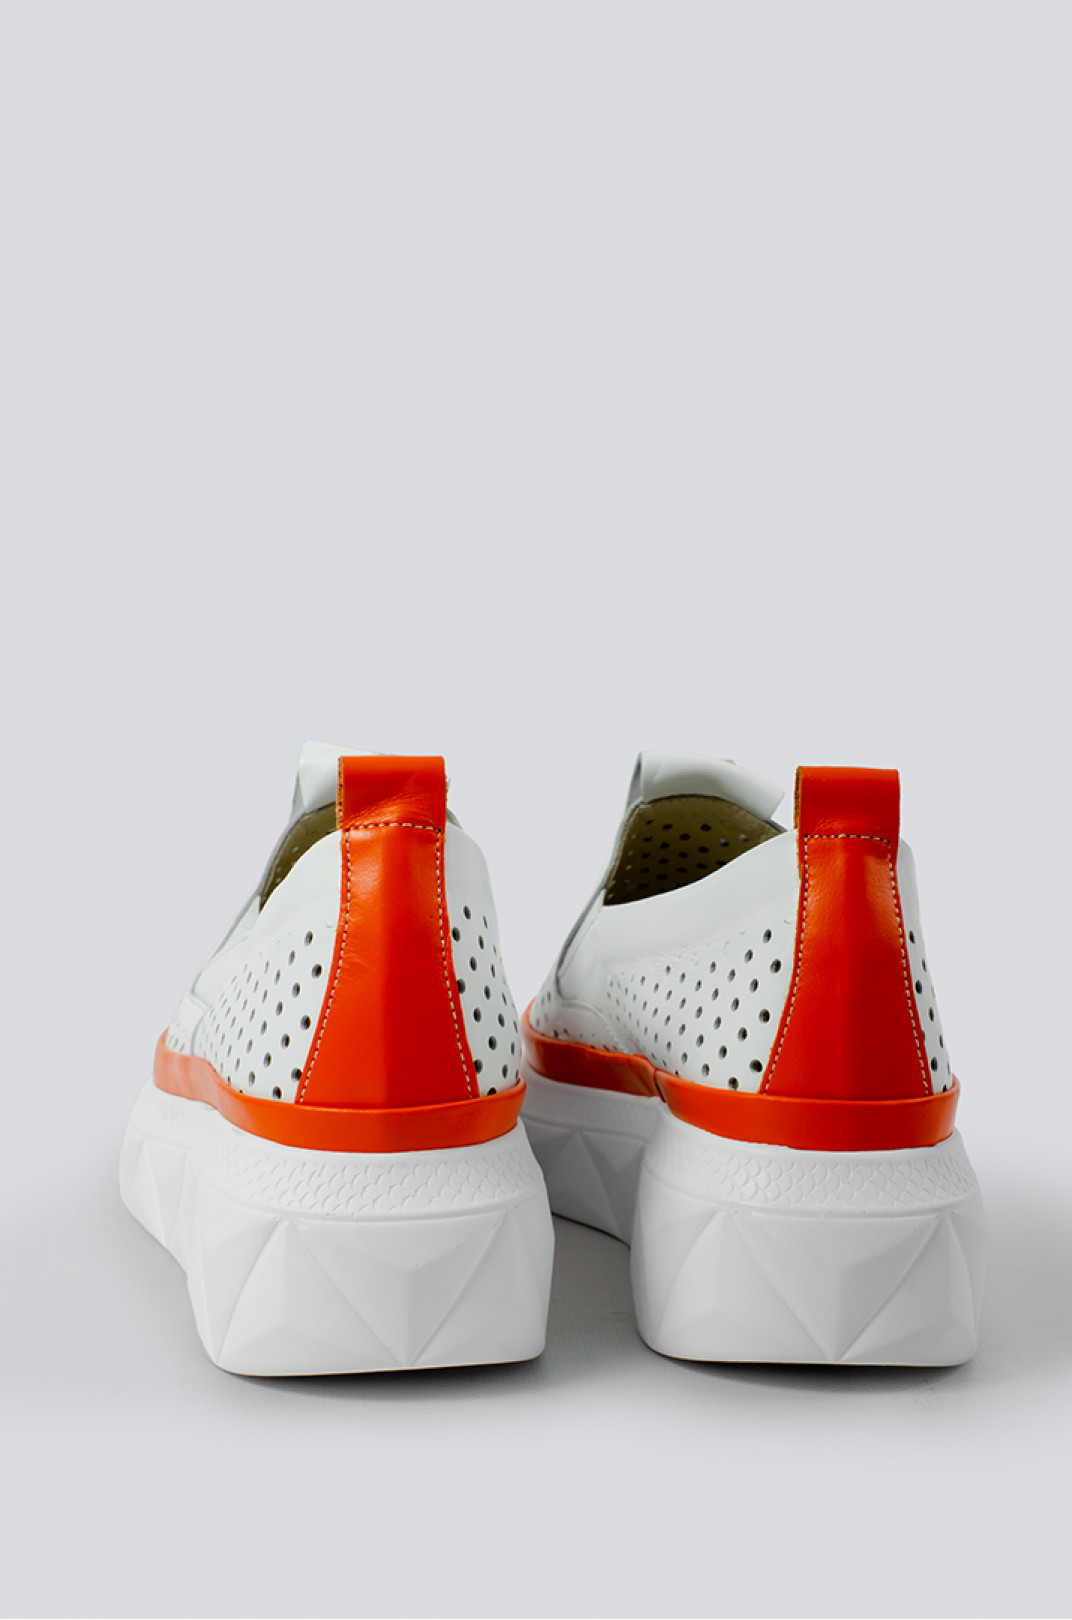 Літні білі туфлі з помаранчевою вставкою з перфорацією великих розмірів